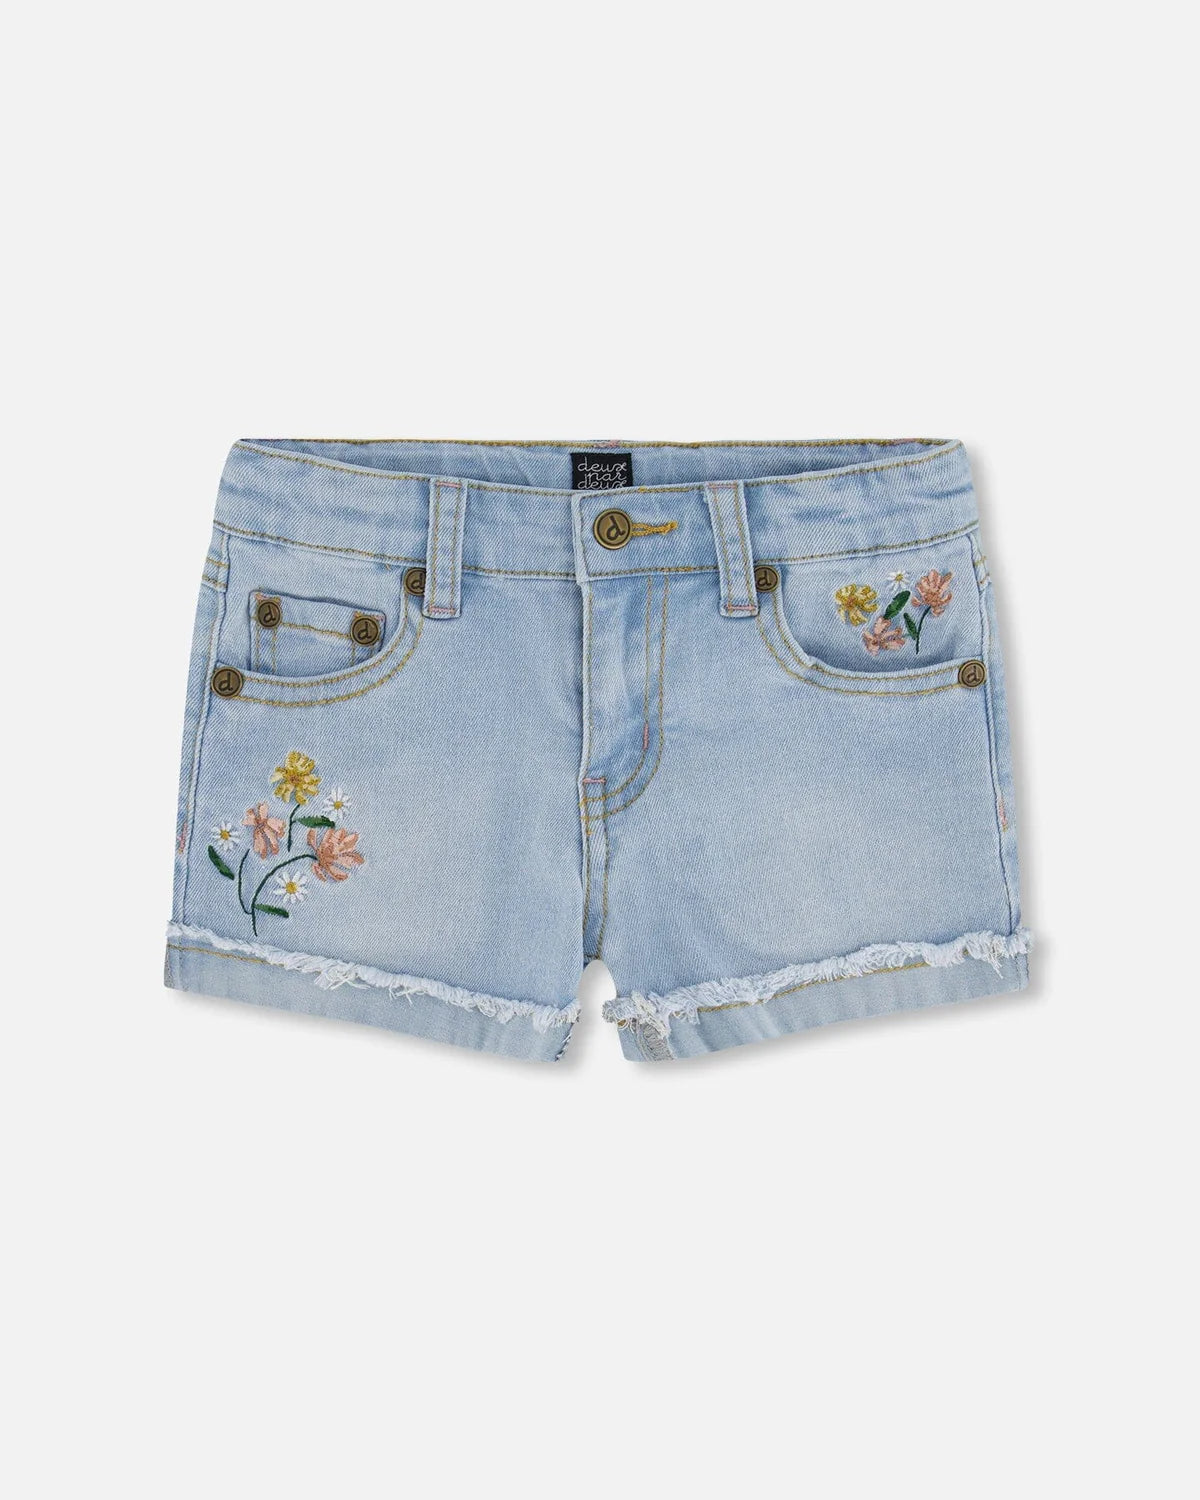 Denim Shorts Embroidery/Deux Par Deux